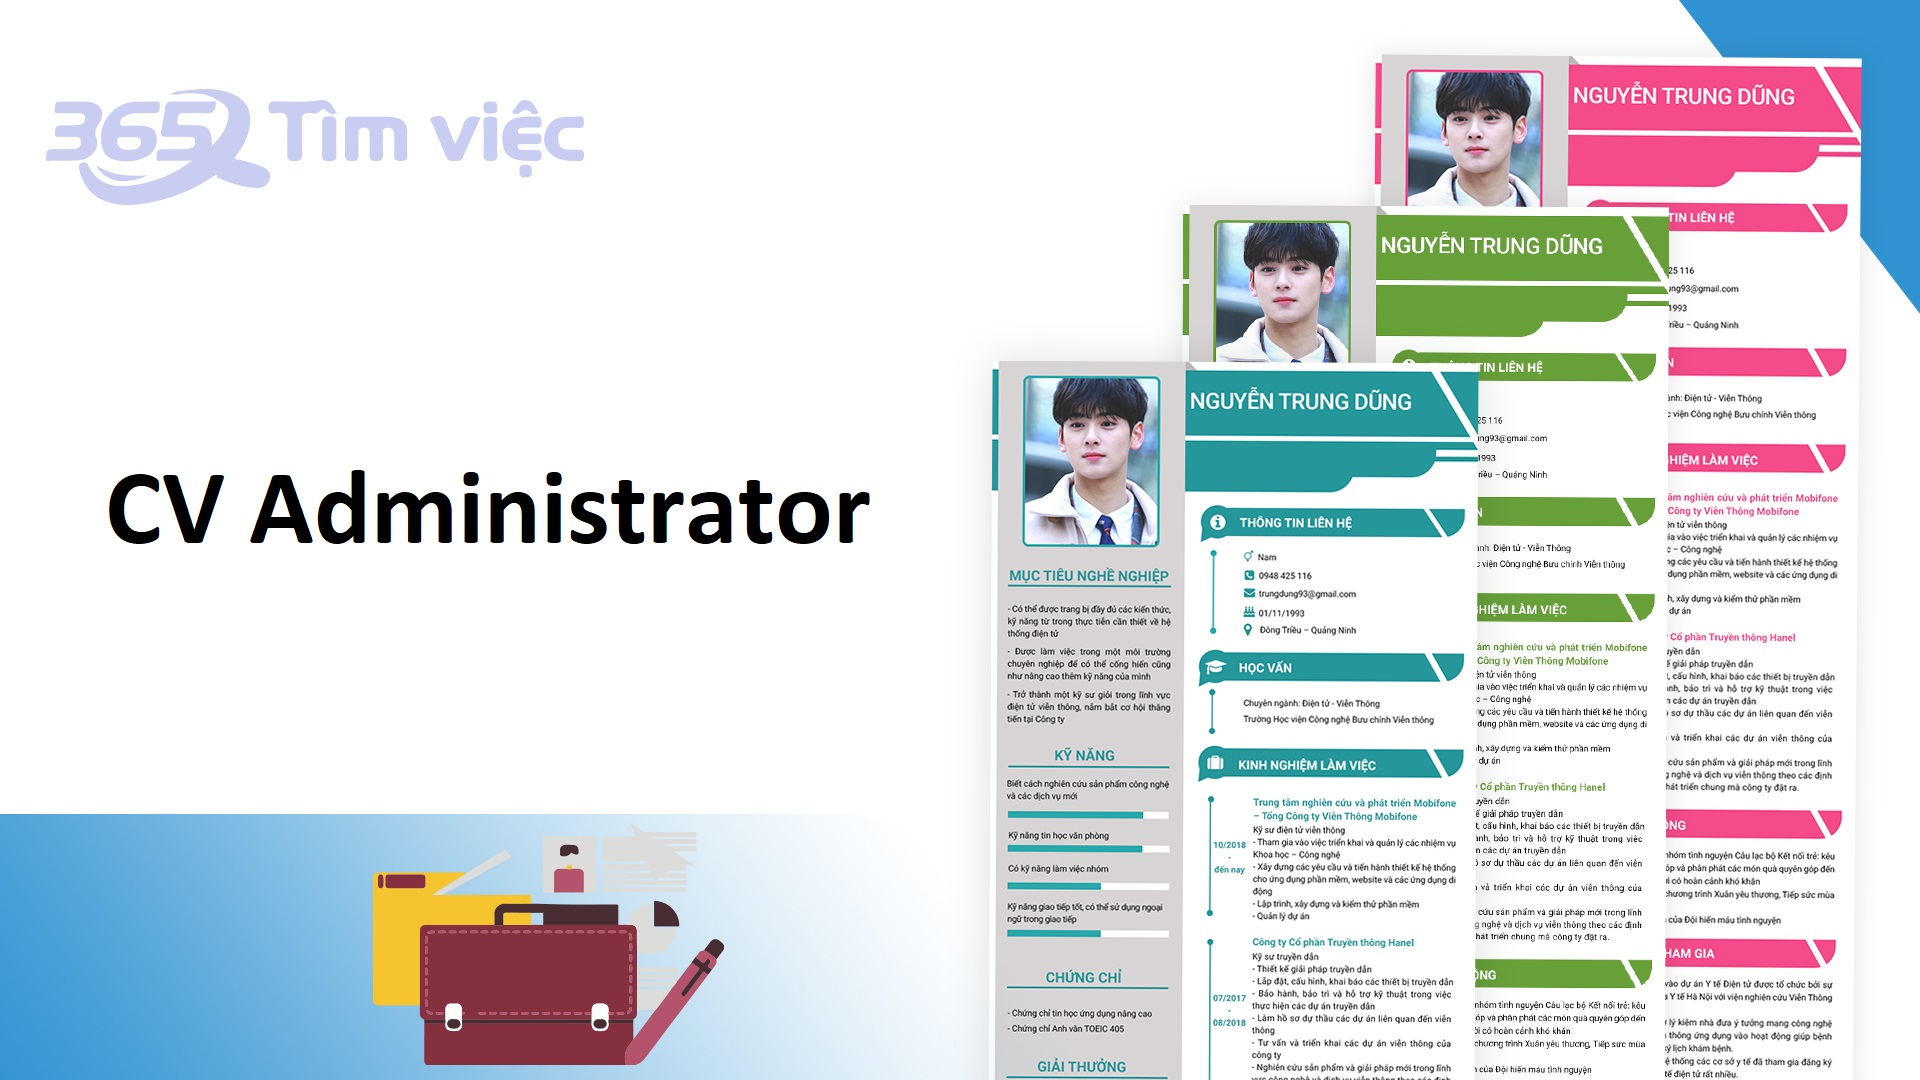 CV xin việc Administrator cần thể hiện những thông tin gì